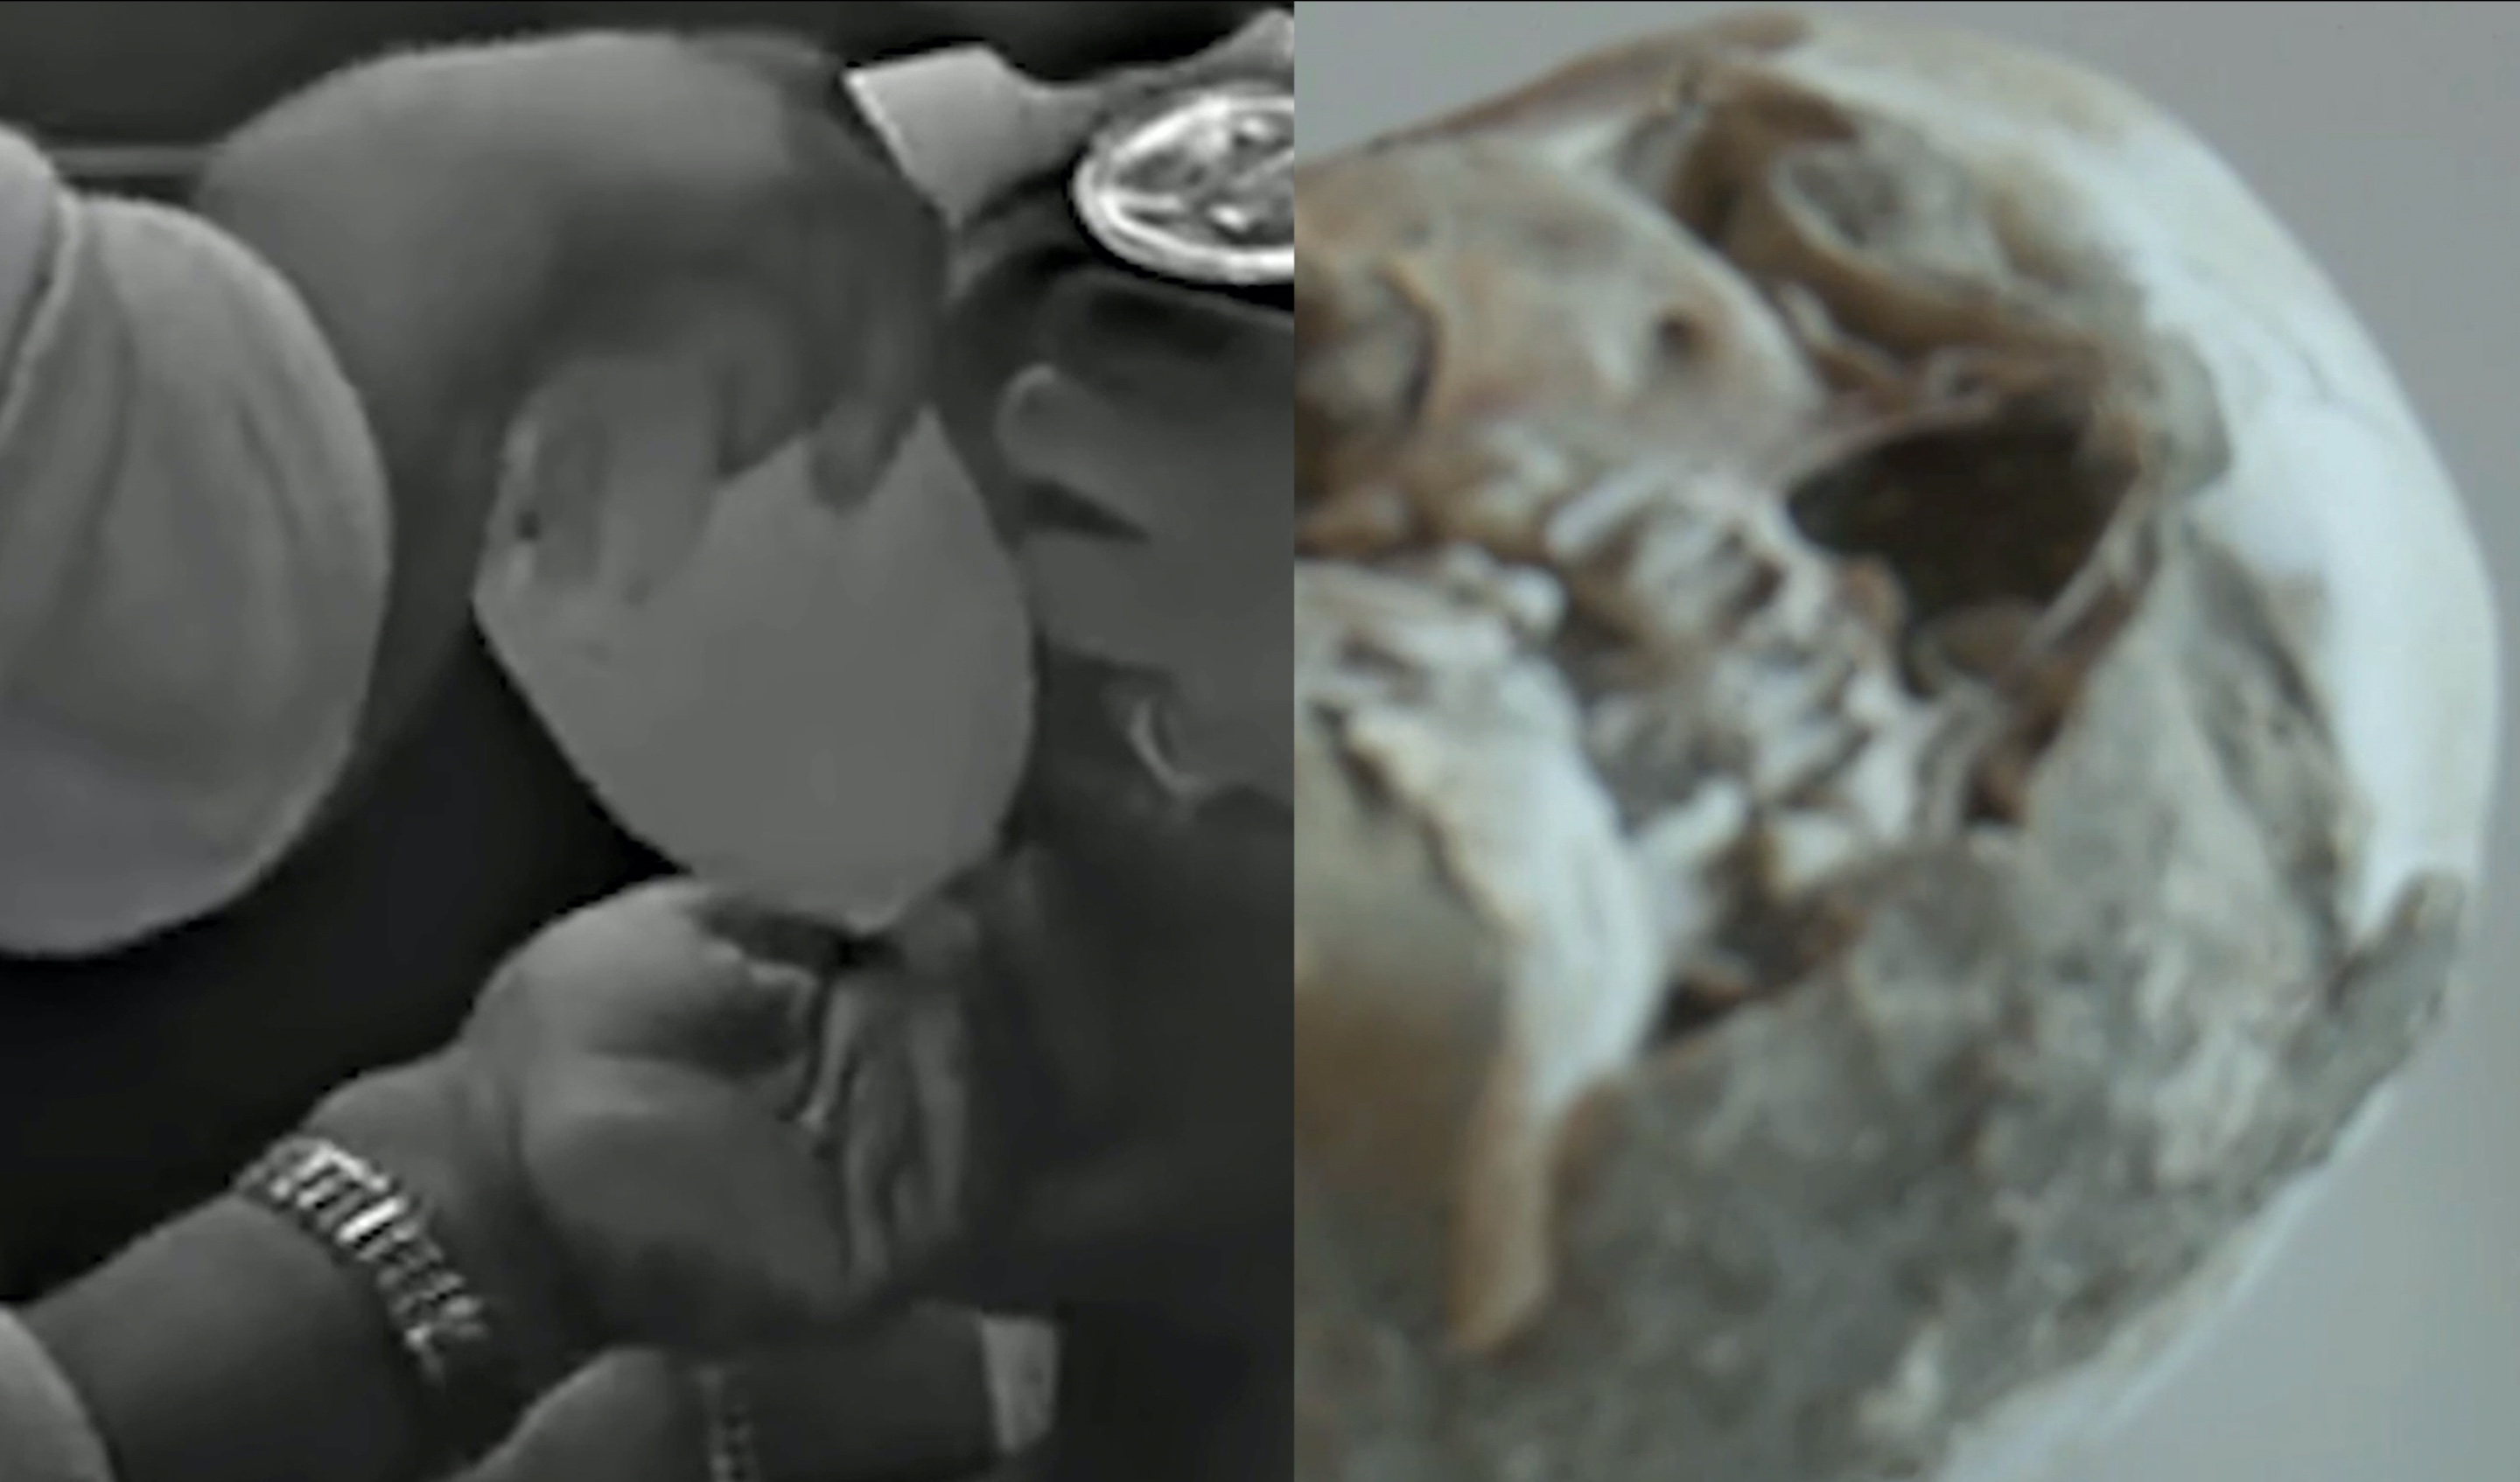 Zwei verpixelte Bilder in Grautönen, links Hände, rechts ein Schädel.